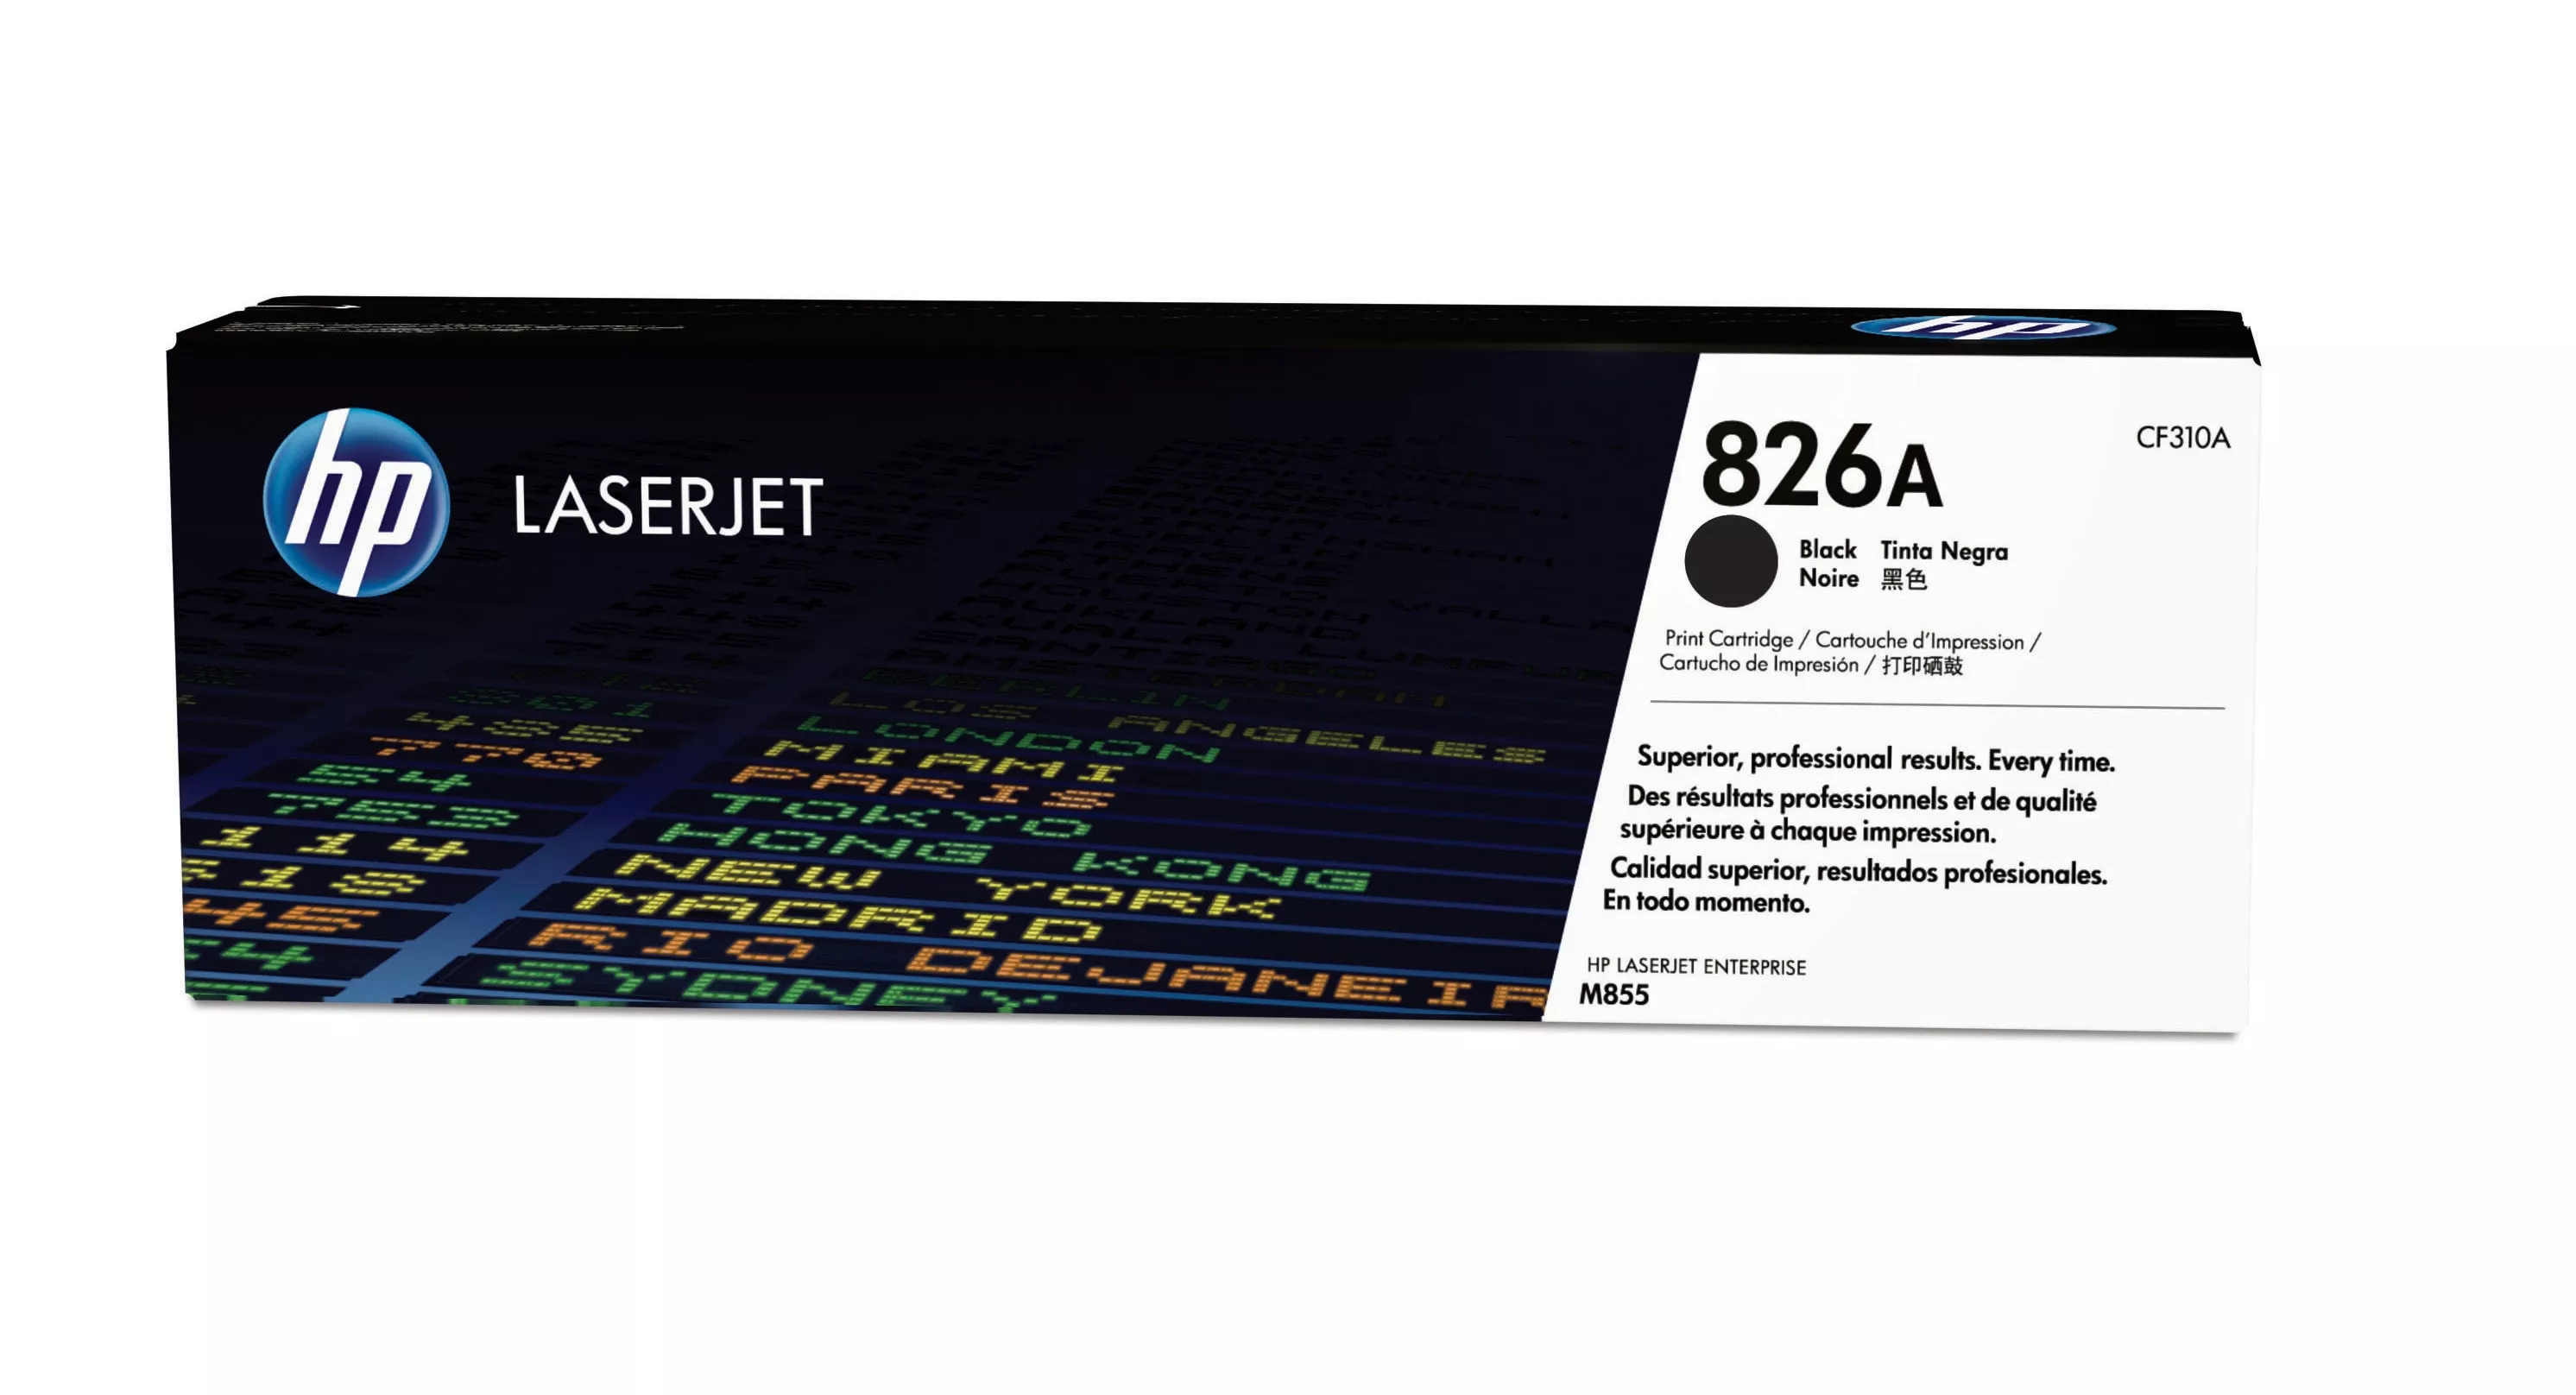 Achat HP 826A original Toner cartridge CF310A black standard au meilleur prix